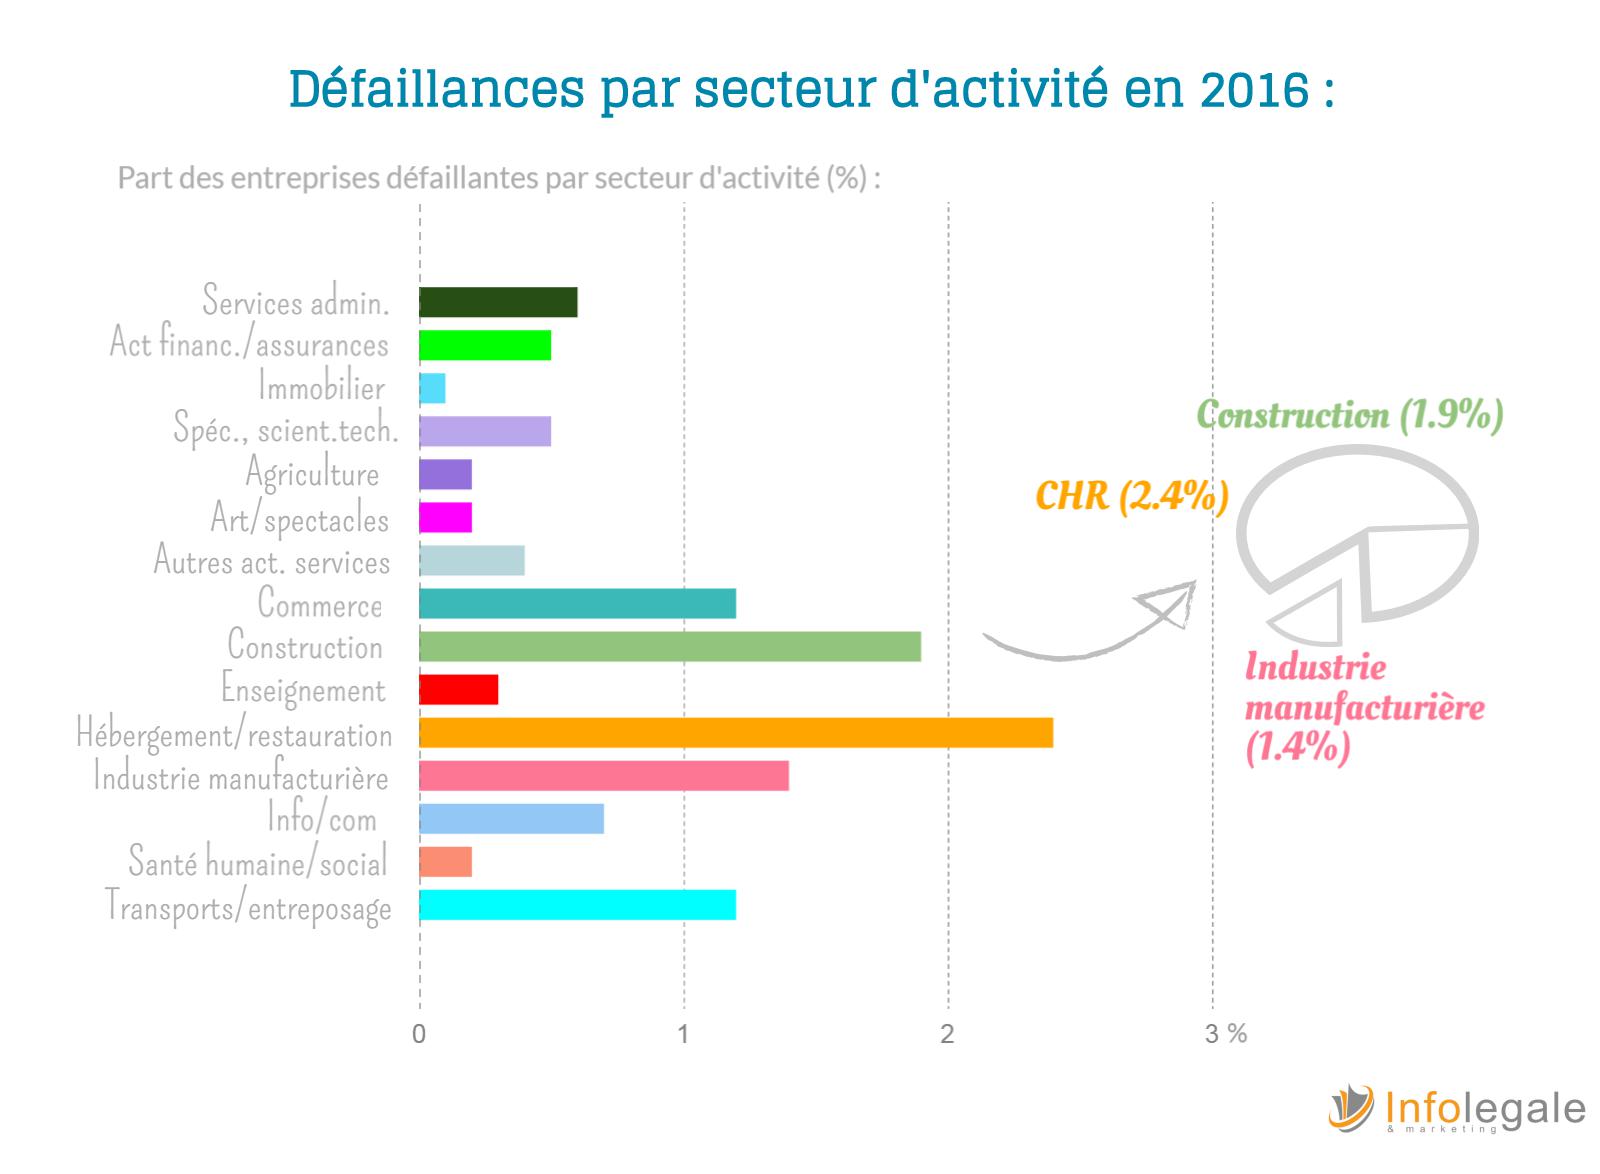 Defaillances par secteurs en 2016